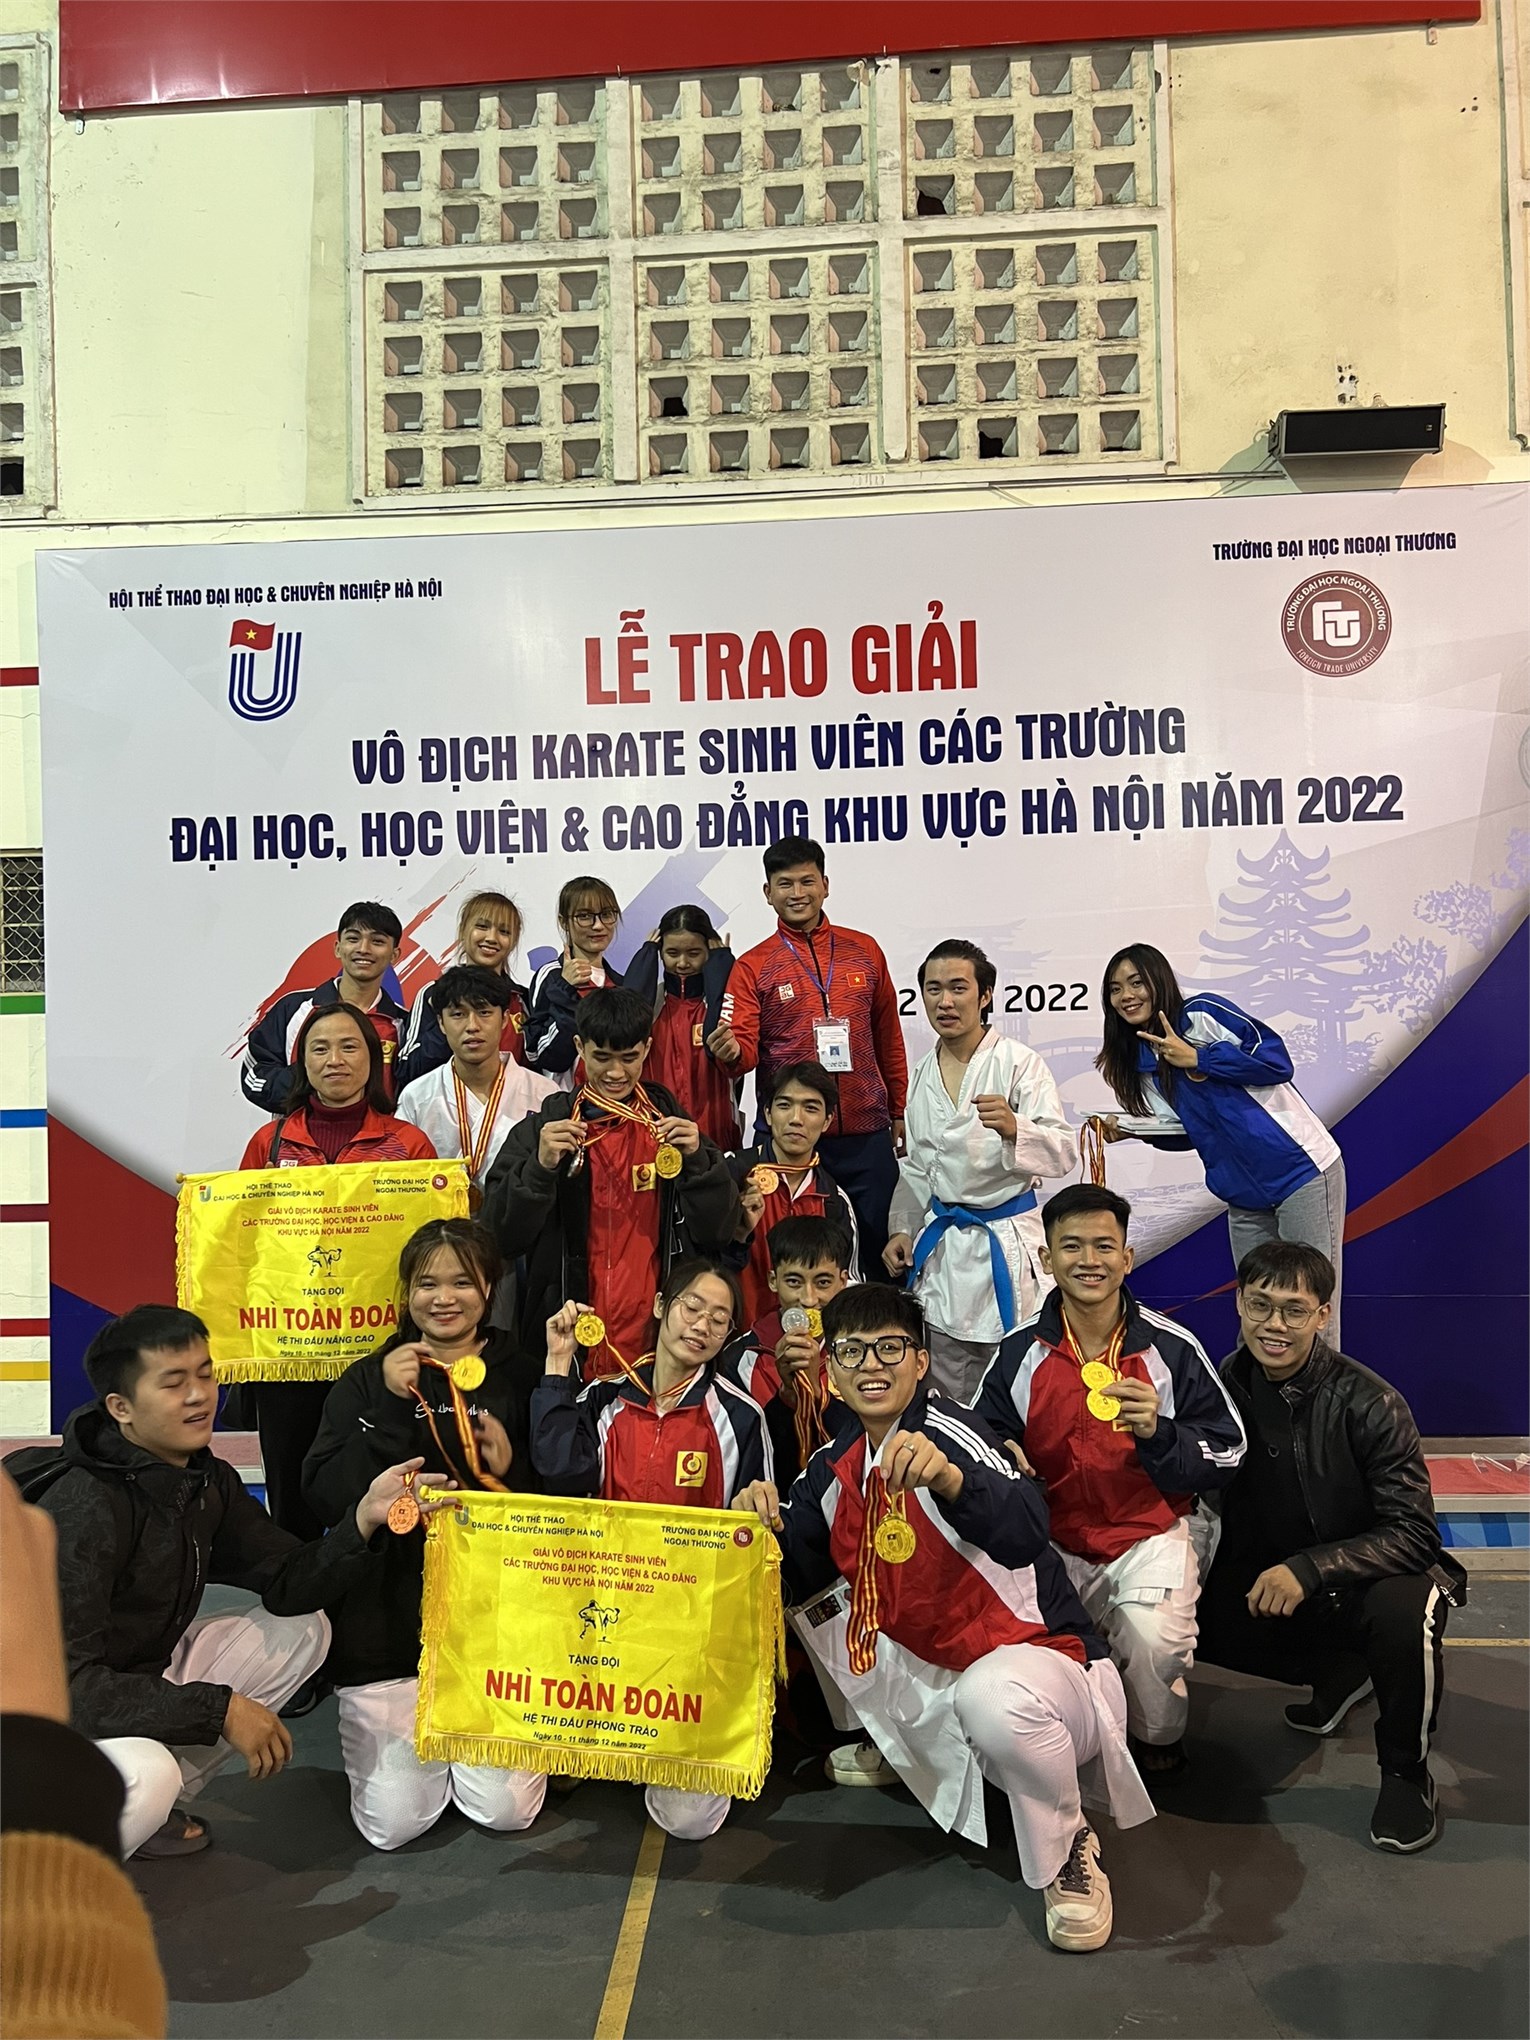 Đại học công nghiệp xuất sắc dành đạt giải nhì toàn đoàn giải vô địch Karate sinh viên đại học, cao đẳng khu vực Hà Nội năm 2022